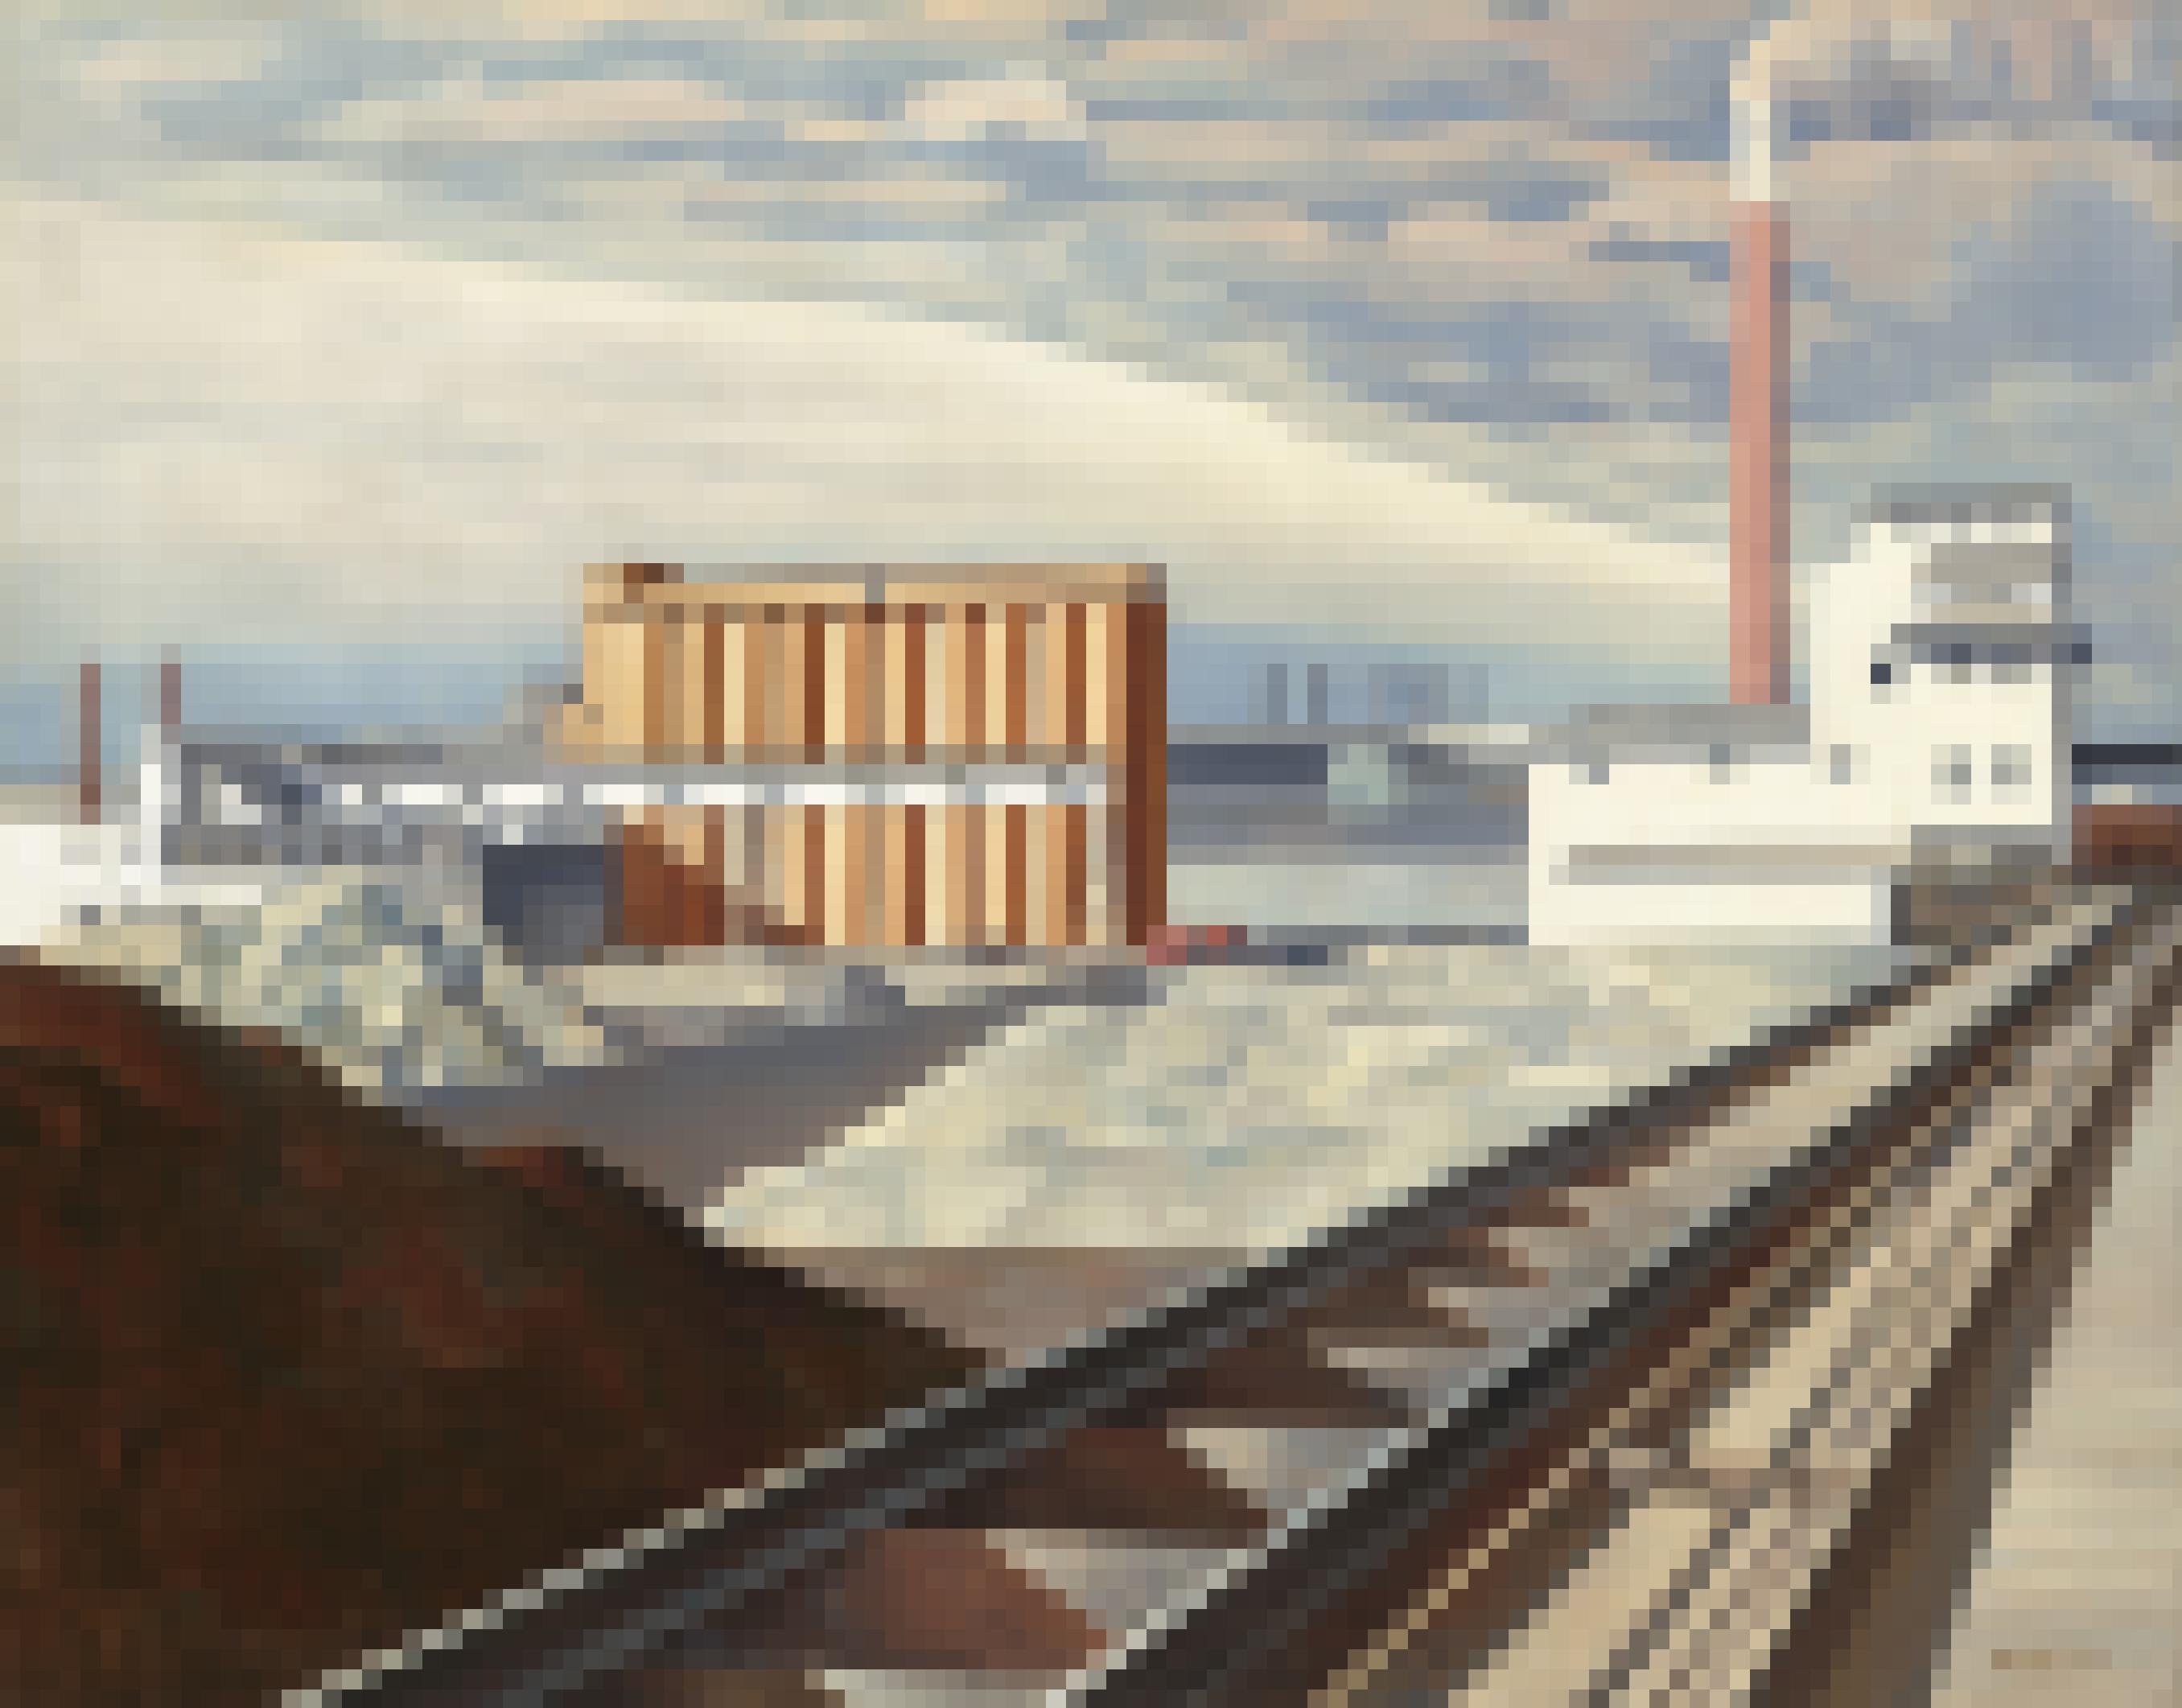 Ein Gemälde, das penibel genau gemalt, eine Fabrik mit rauchendem Schornstein zeigt.